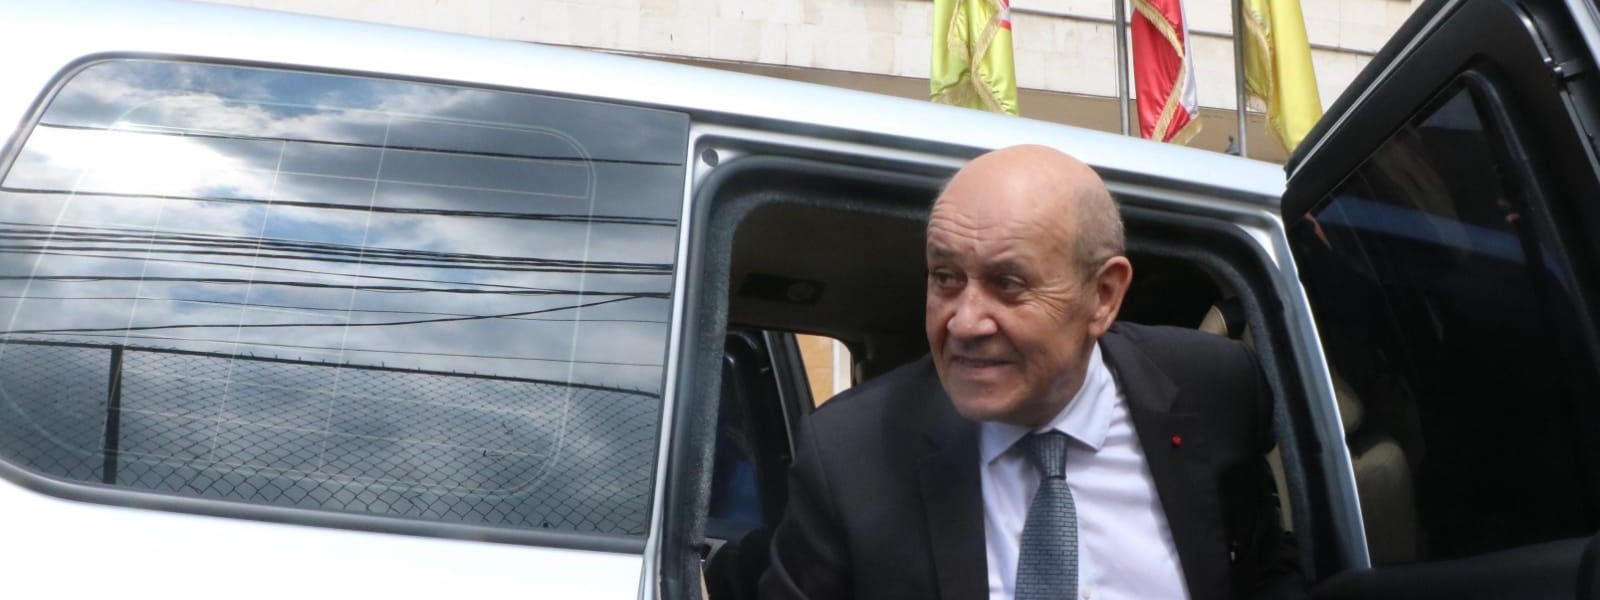 المبعوث الفرنسي الخاص جان إيف لودريان يصل إلى مقر كتلة "الوفاء للمقاومة" النيابية للقاء رئيسها النائب محمد رعد. 